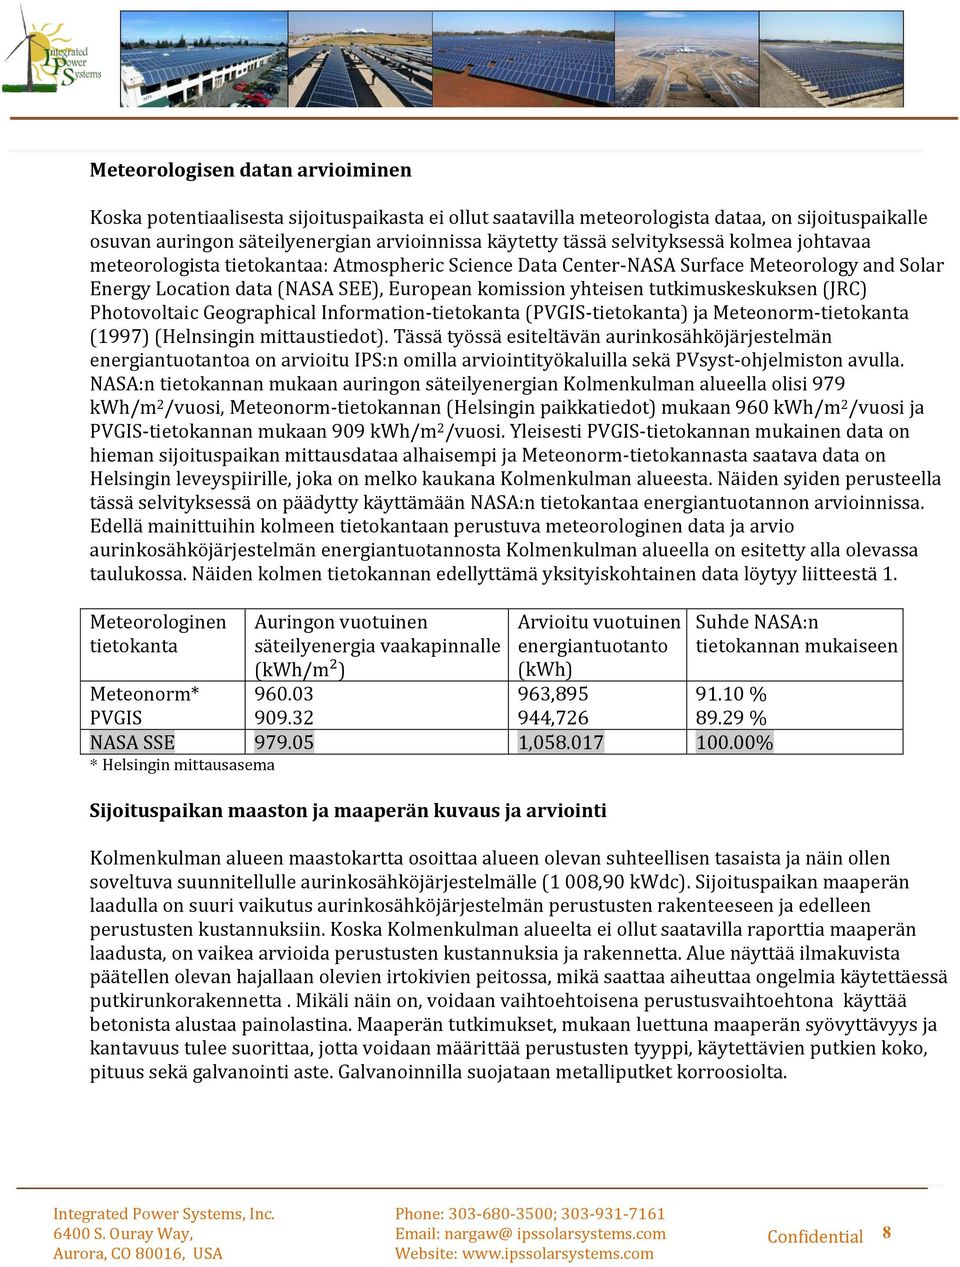 tutkimuskeskuksen (JRC) Photovoltaic Geographical Information-tietokanta (PVGIS-tietokanta) ja Meteonorm-tietokanta (1997) (Helnsingin mittaustiedot).